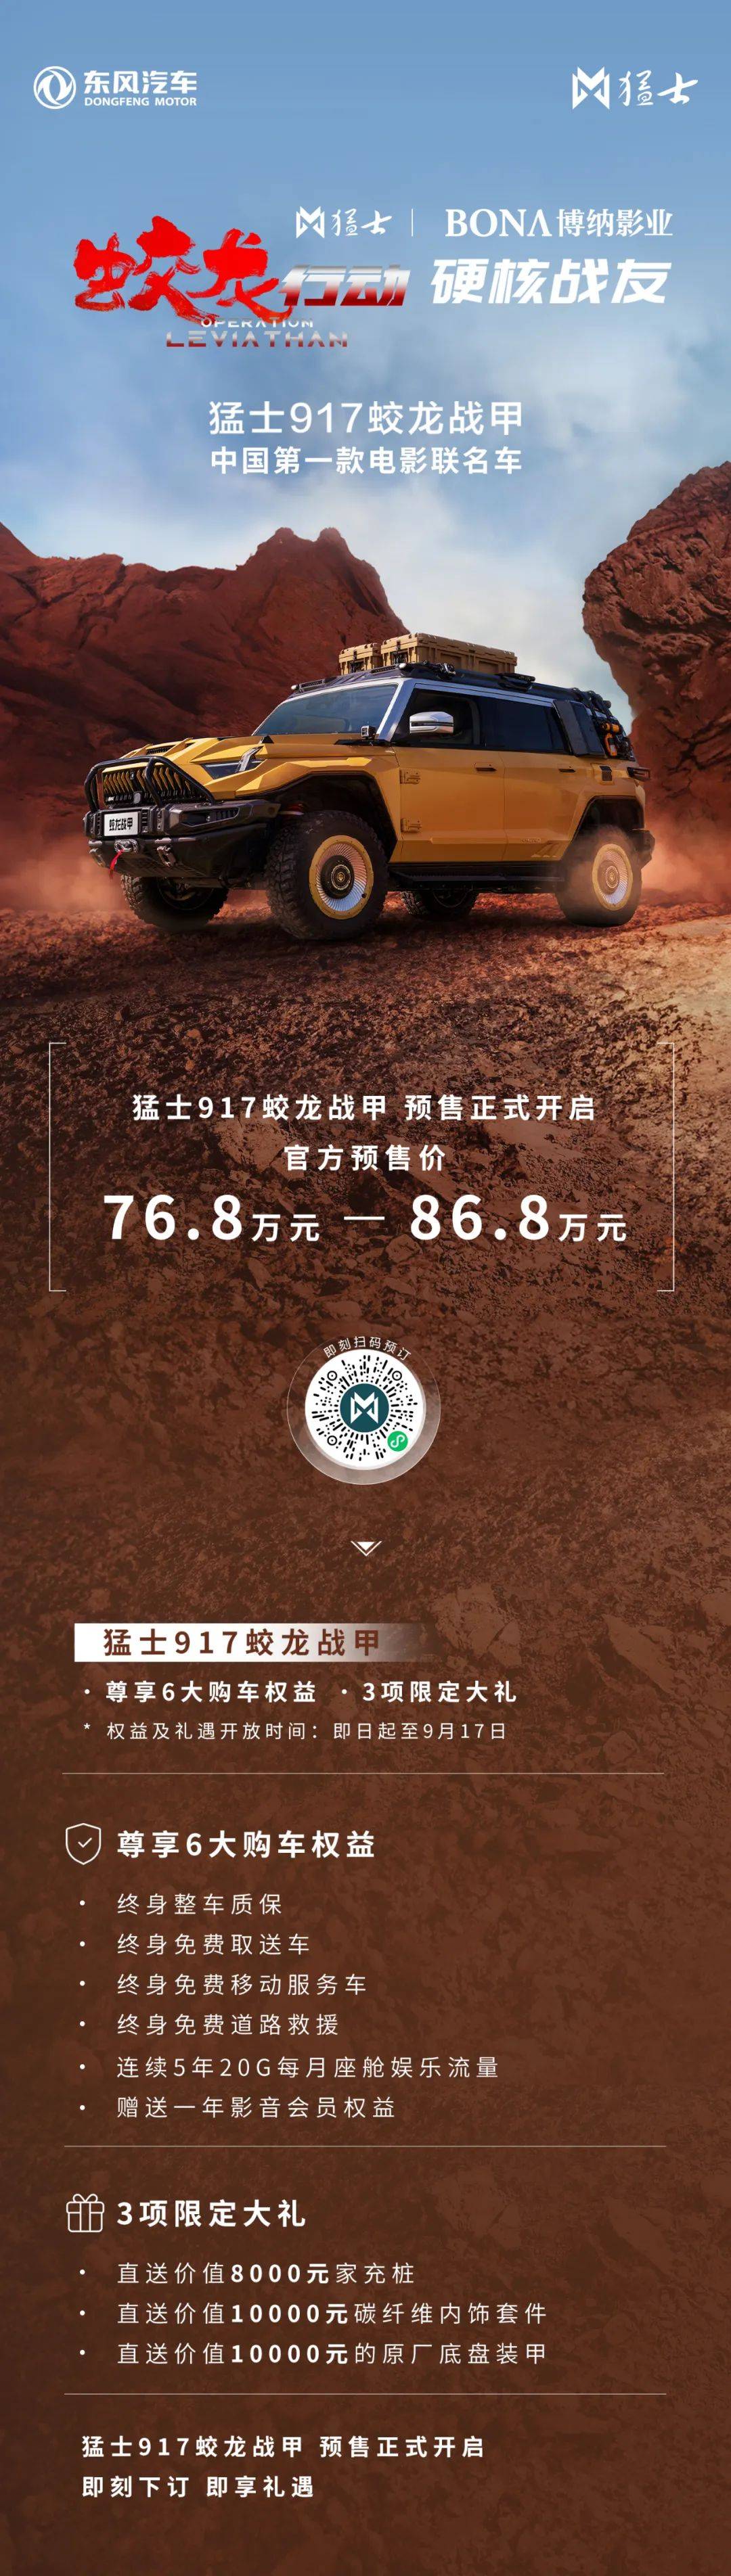 76.8-86.8万东风猛士917龙甲开启预售_搜狐汽车_ Sohu.com